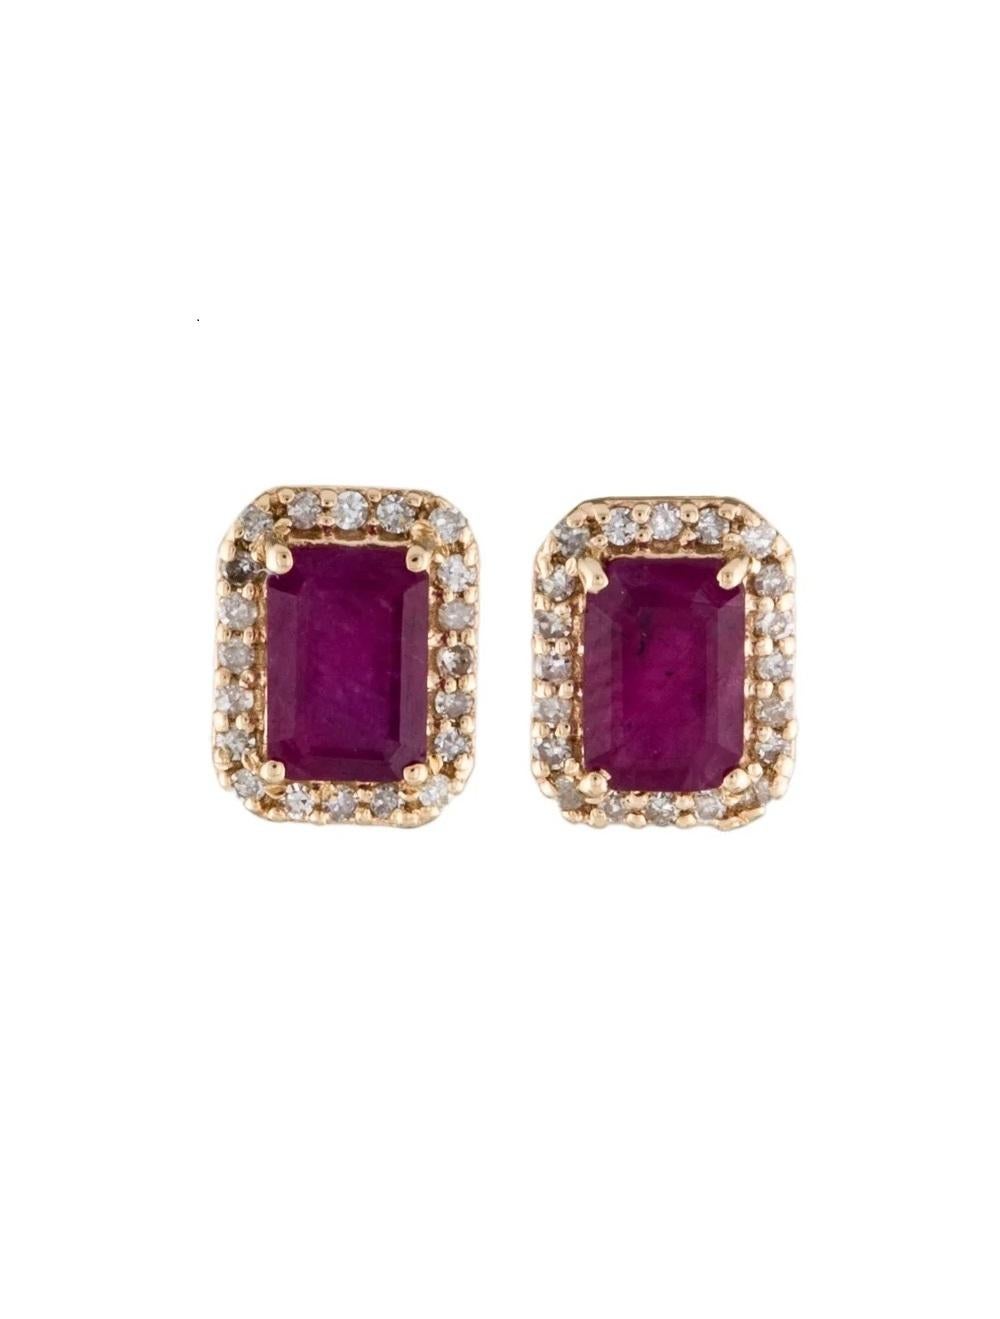 14K Boucles d'oreilles rubis et diamants, 1.63ctw - Classic Design, Timeless Beauty Neuf - En vente à Holtsville, NY